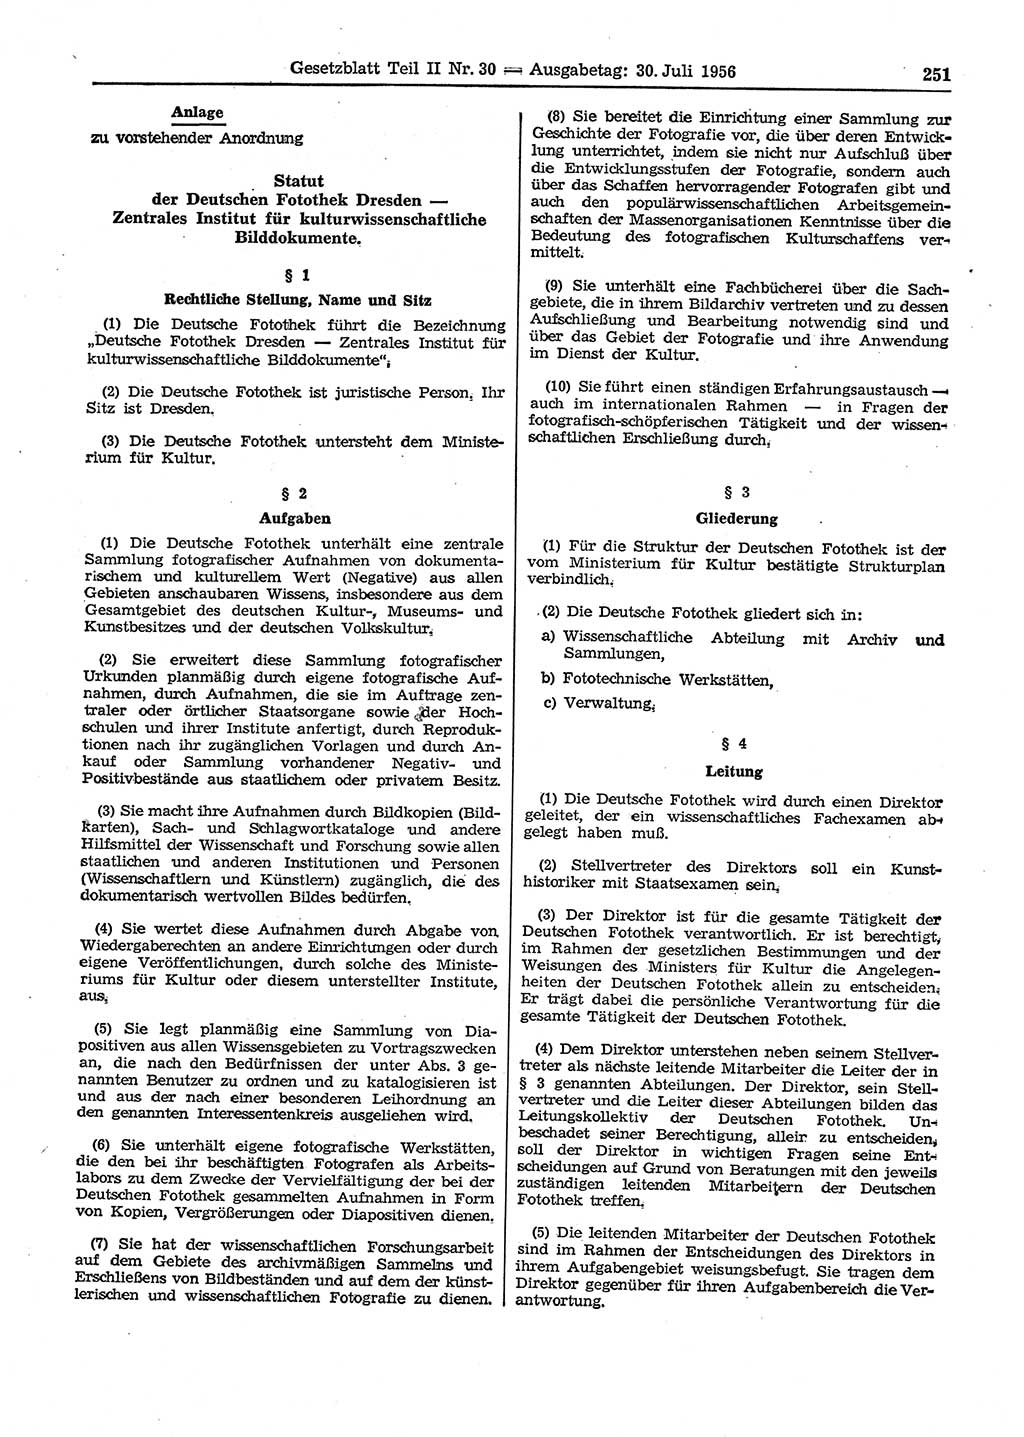 Gesetzblatt (GBl.) der Deutschen Demokratischen Republik (DDR) Teil ⅠⅠ 1956, Seite 251 (GBl. DDR ⅠⅠ 1956, S. 251)